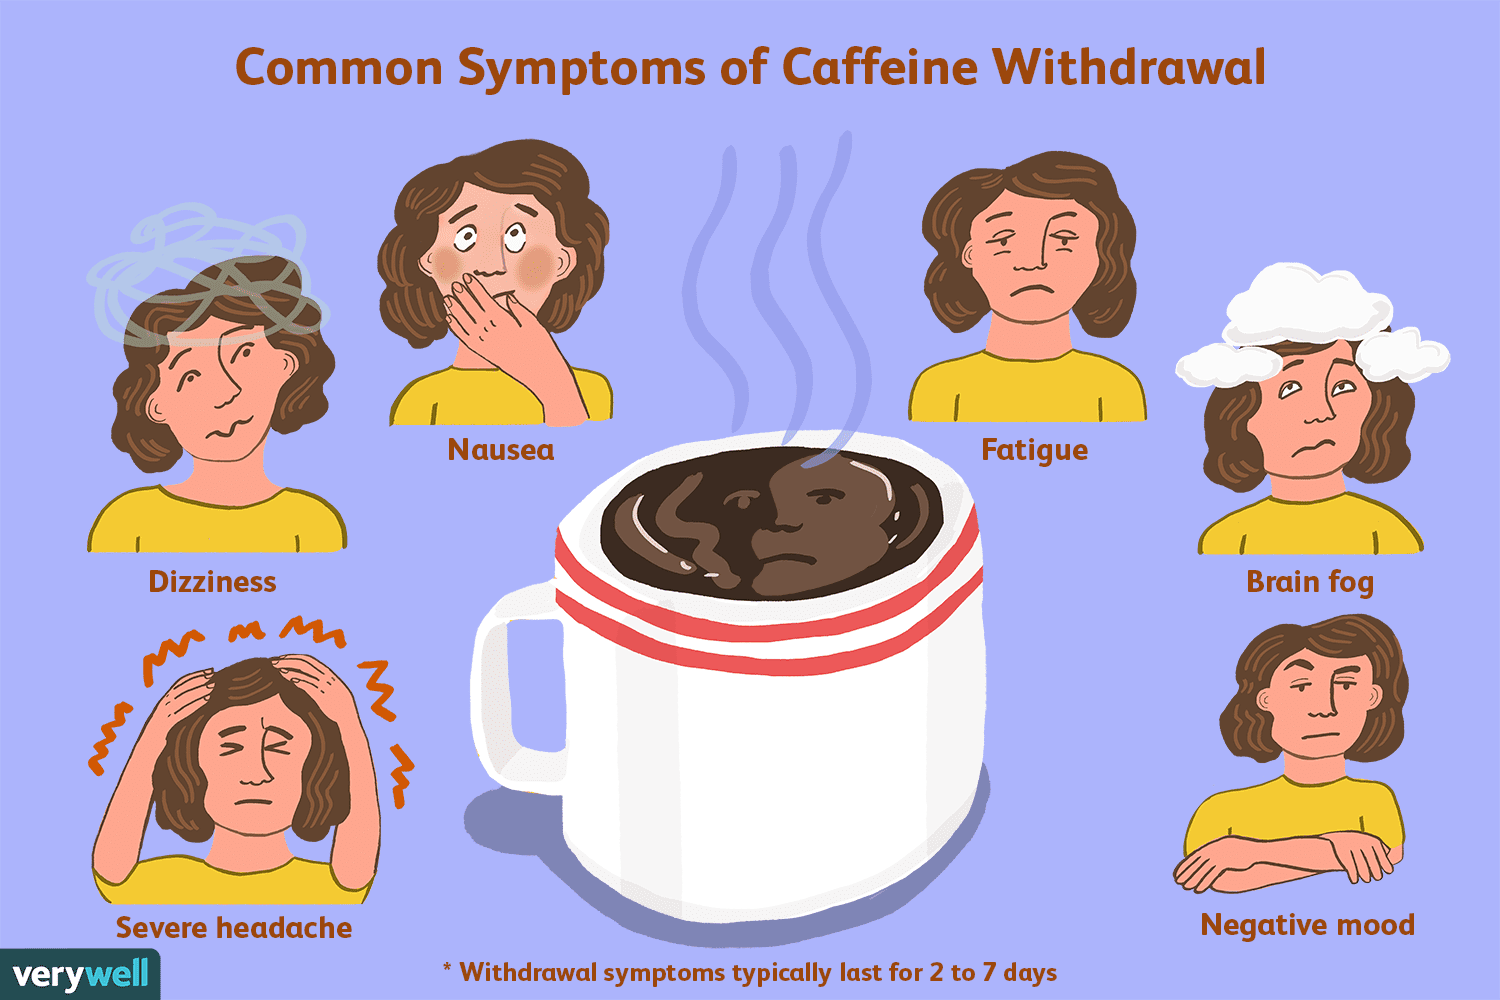 Can Caffeine Withdrawal Make You Feel Sick?